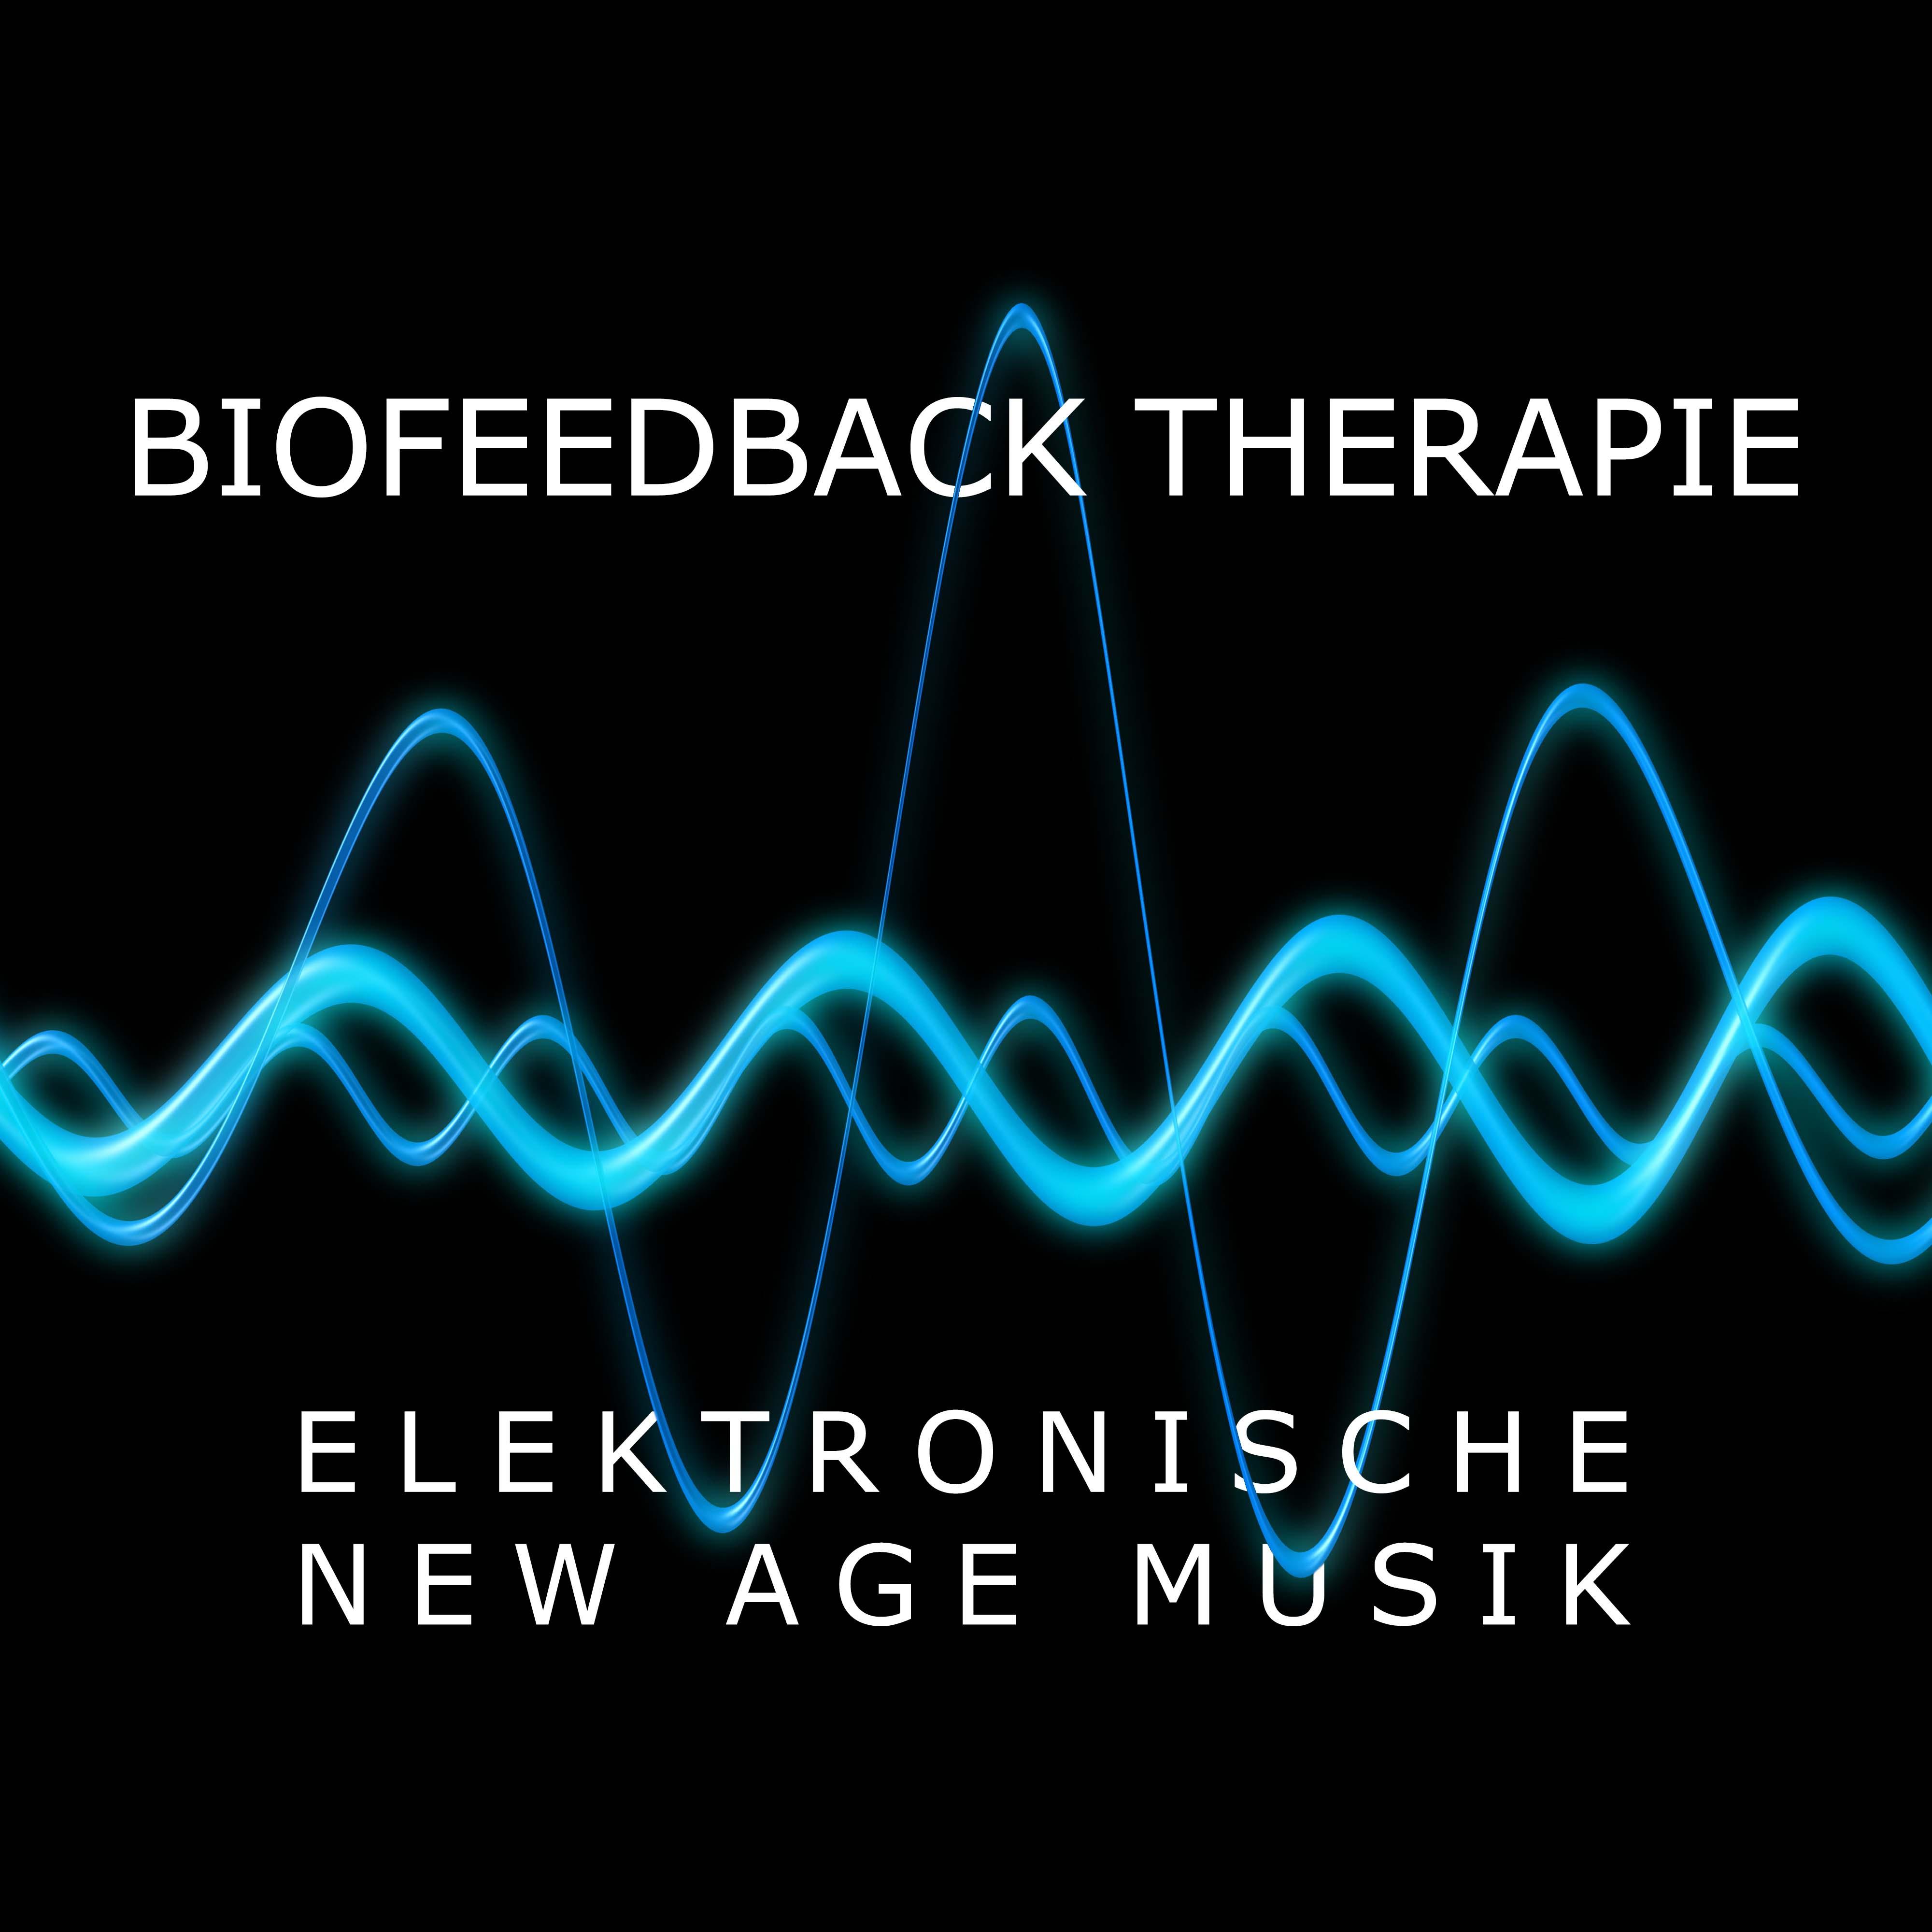 Biofeedback Therapie - Elektronische New Age Musik und Isochronic Tones Erfahrungen für tiefe Entspannung